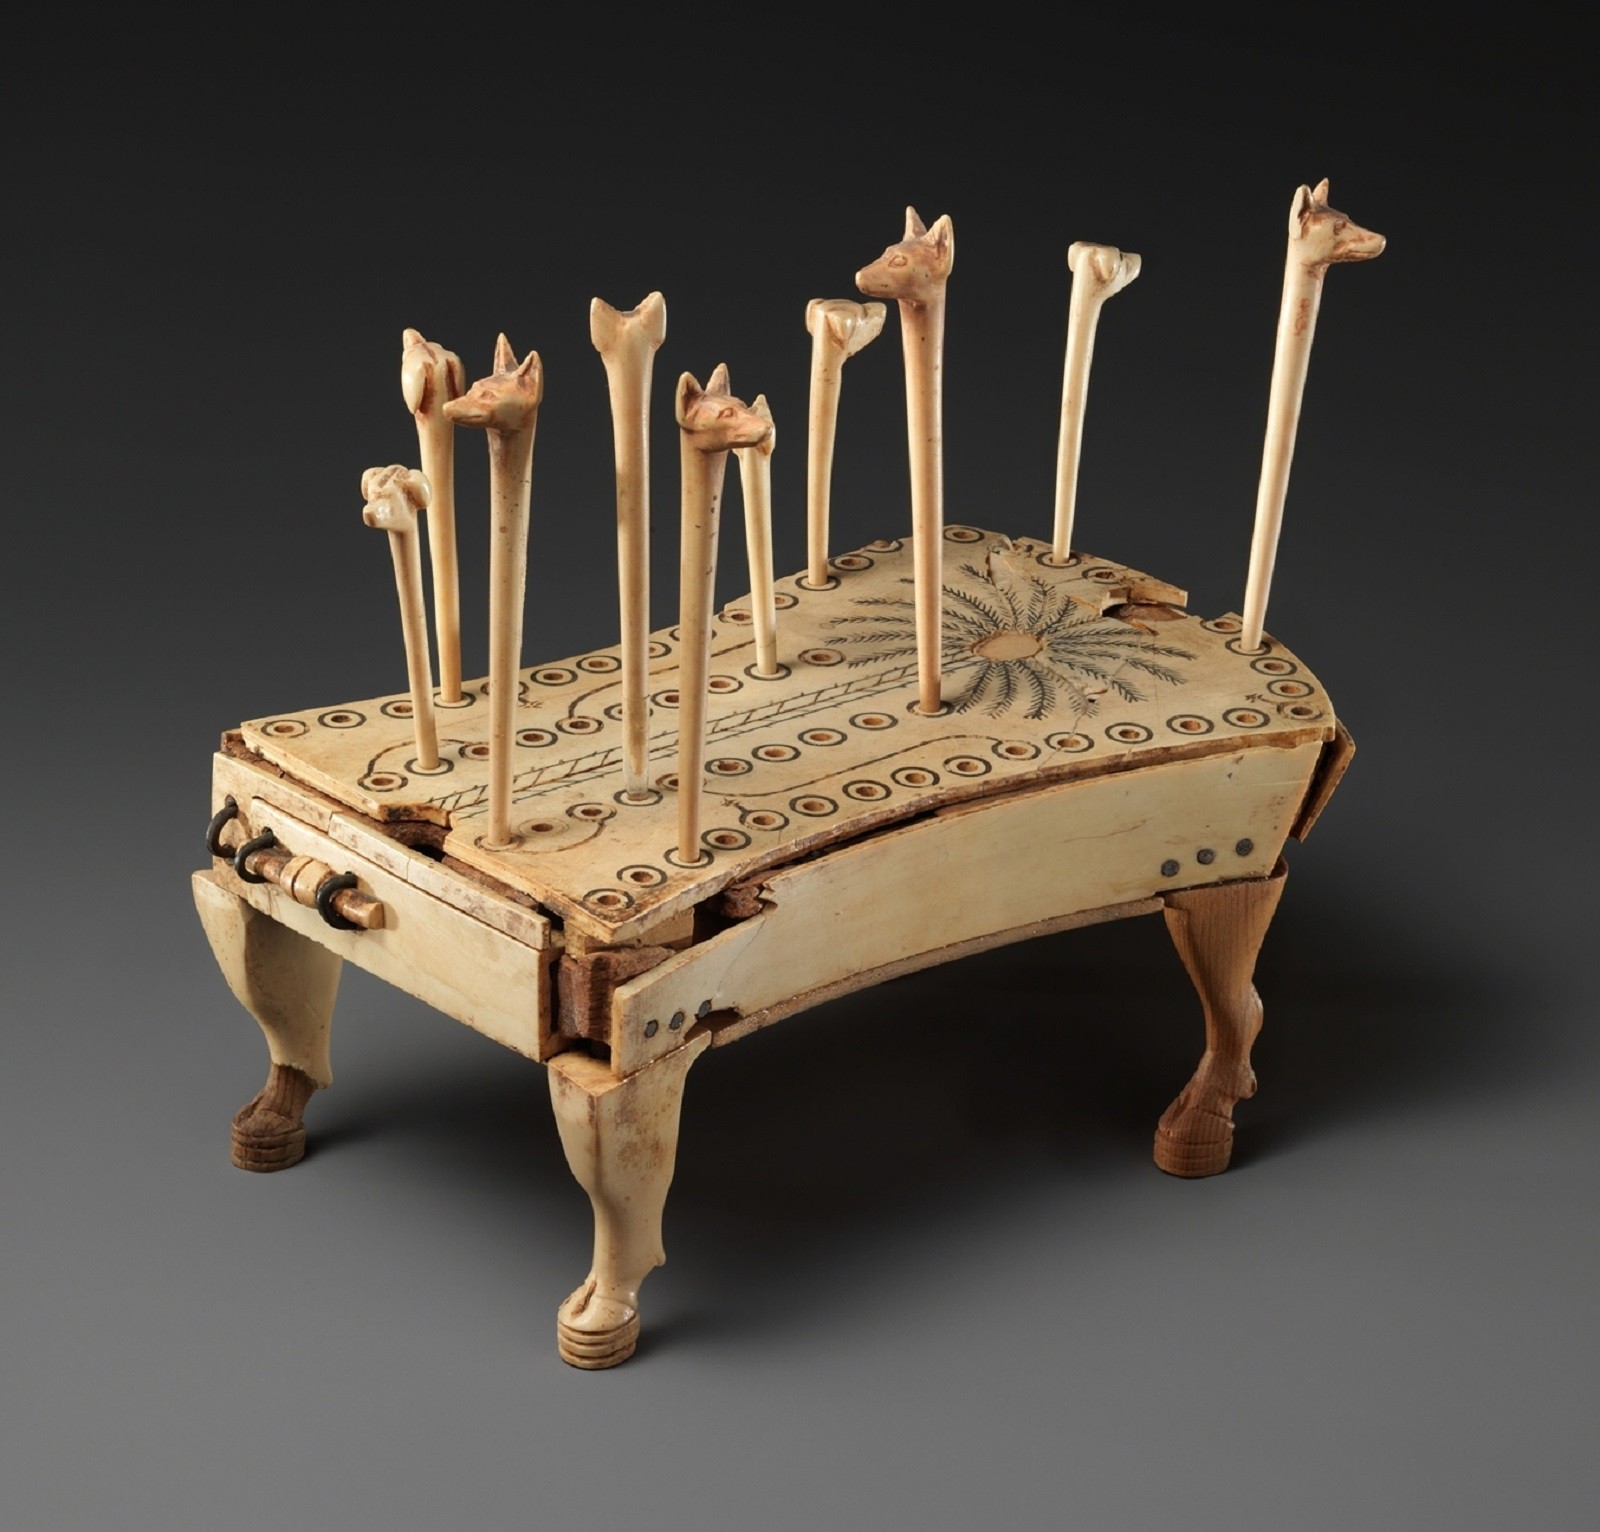 Starożytna gra planszowa zaskakuje pochodzeniem. Wcale nie powstała w Egipcie?